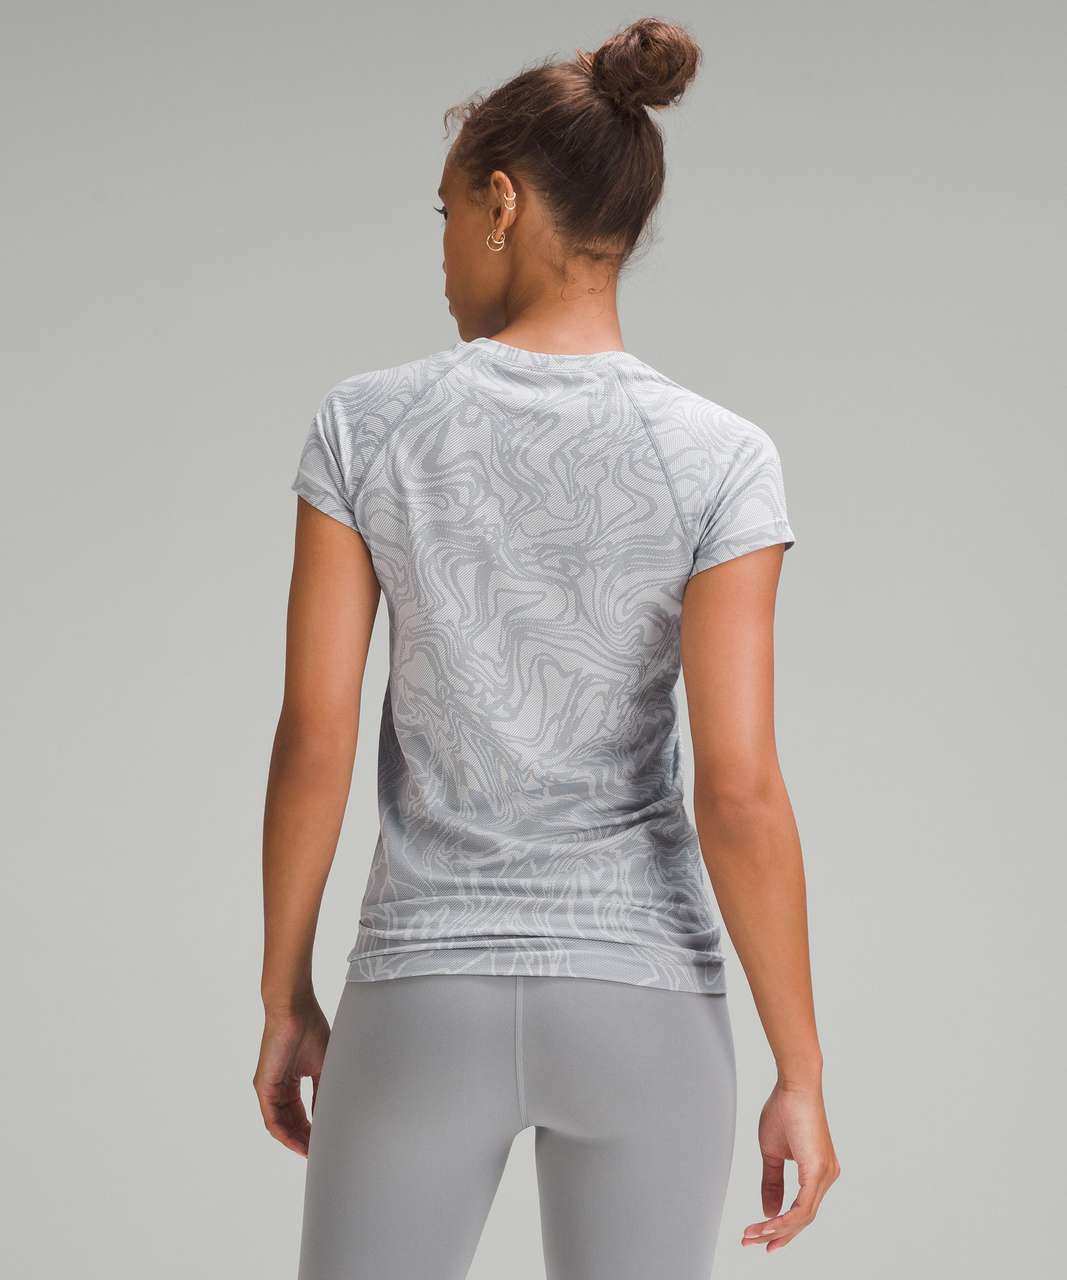 Lululemon Swiftly Tech Short-Sleeve Shirt 2.0 - Marble Mix Rhino Grey / White